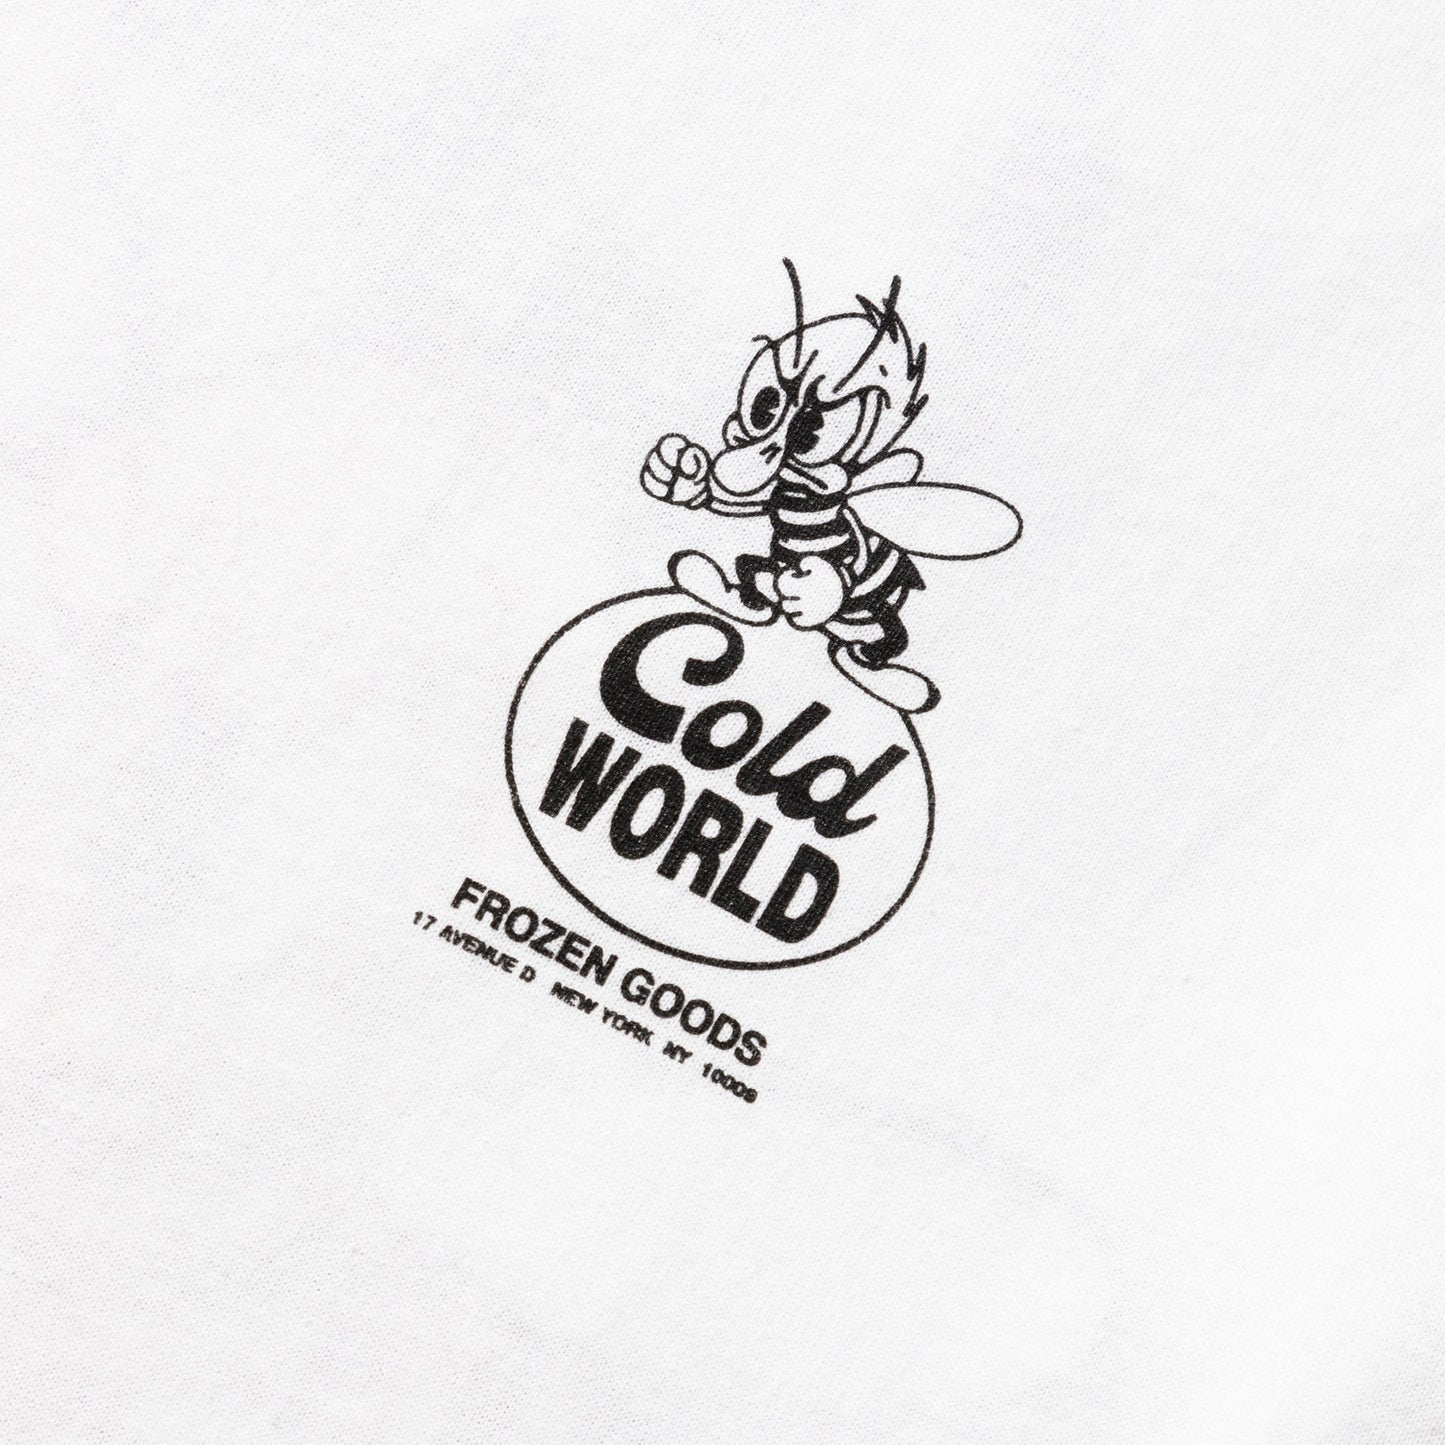 Cold World Frozen Goods T-Shirts BEE TEAM T-SHIRT